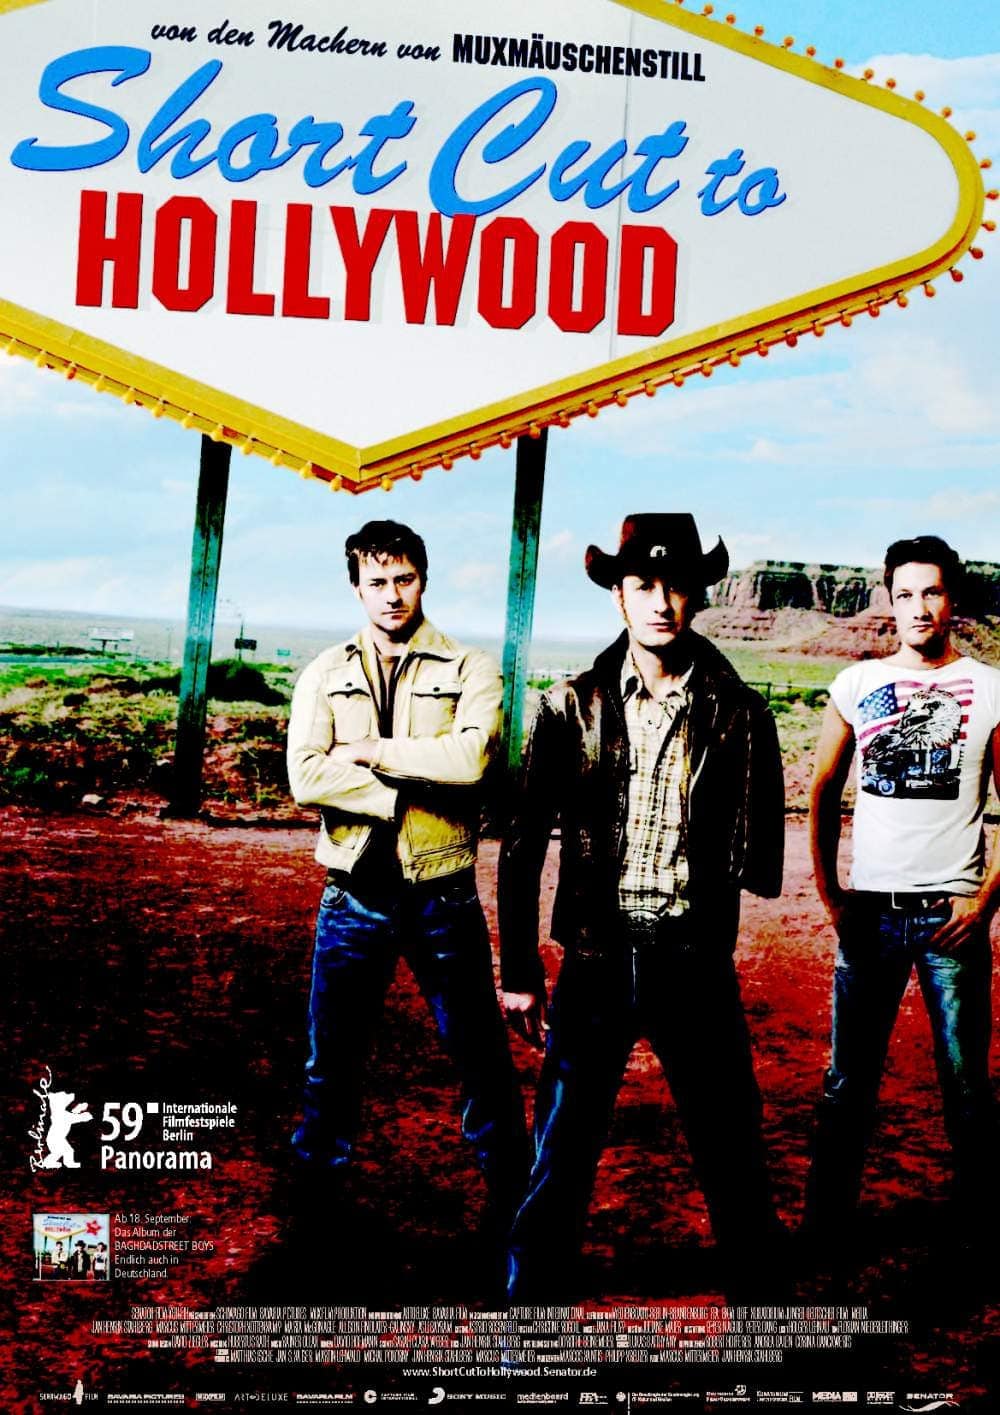 Plakat von "Short Cut to Hollywood"